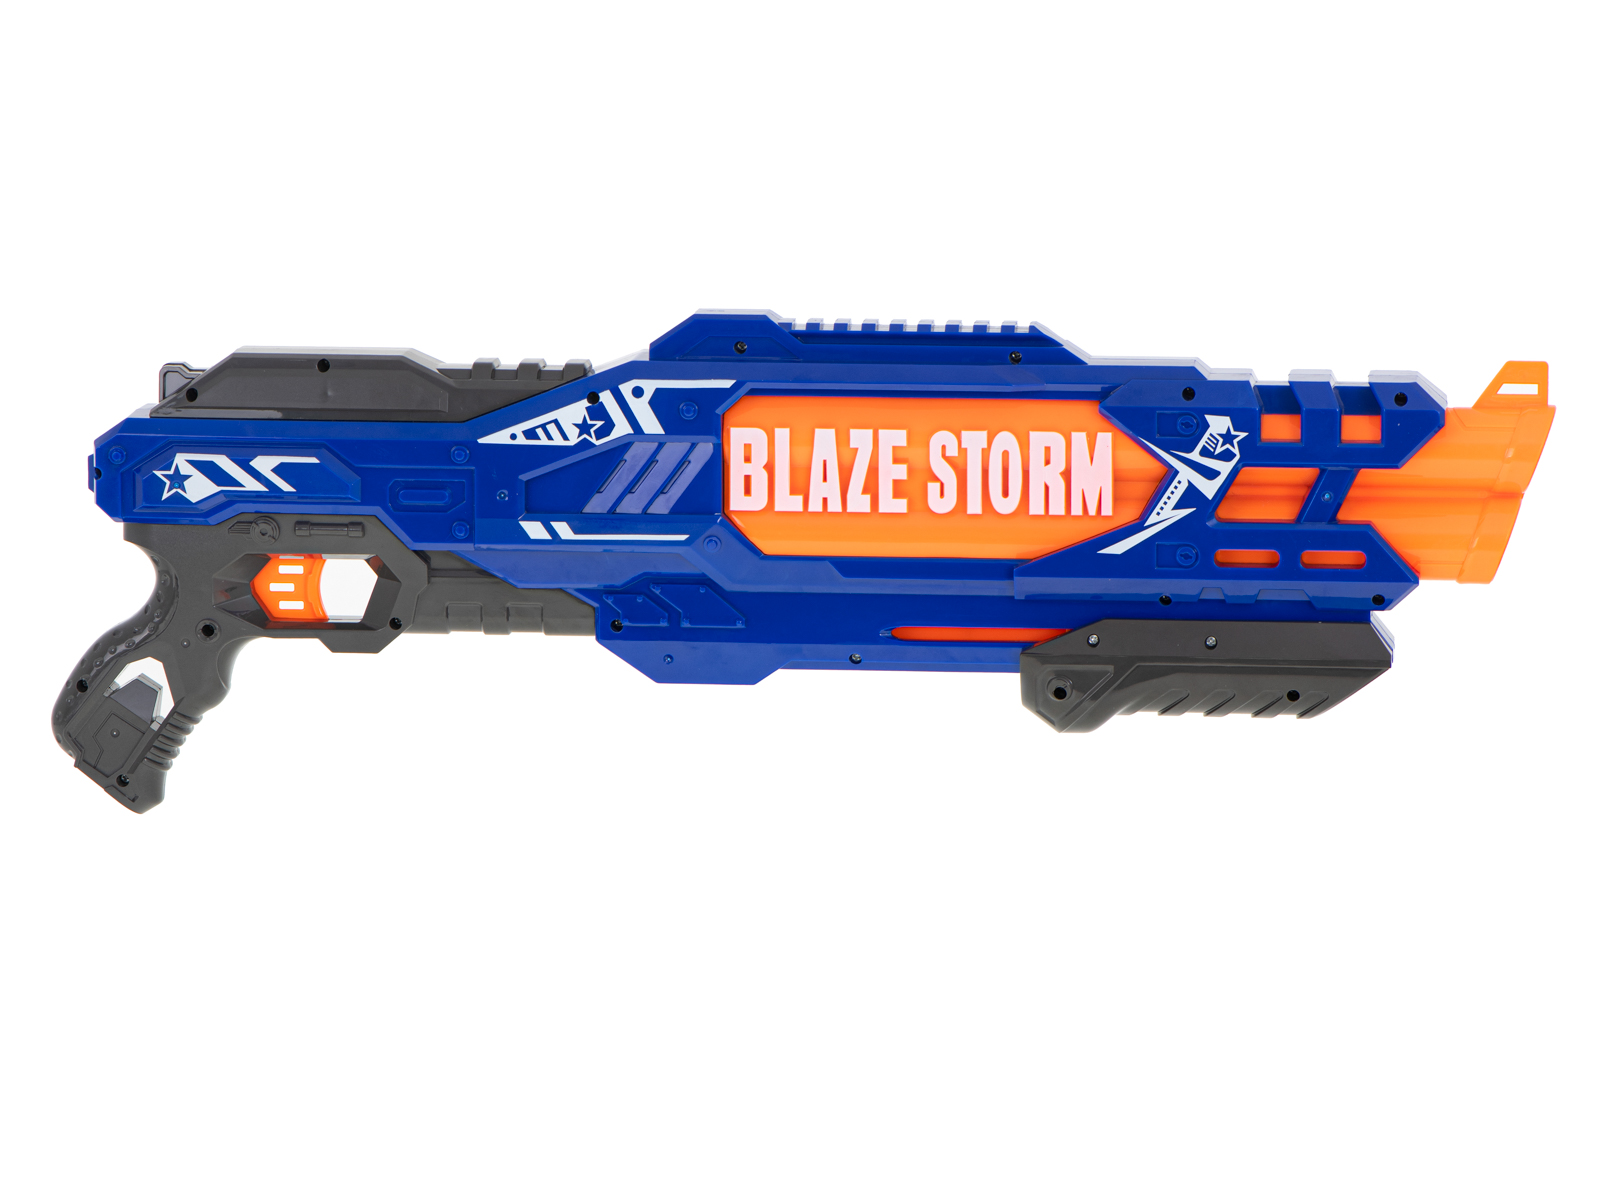 Wyrzutnia-karabin-Blaze-Storm-20-strzalek-NERF-806321.jpg